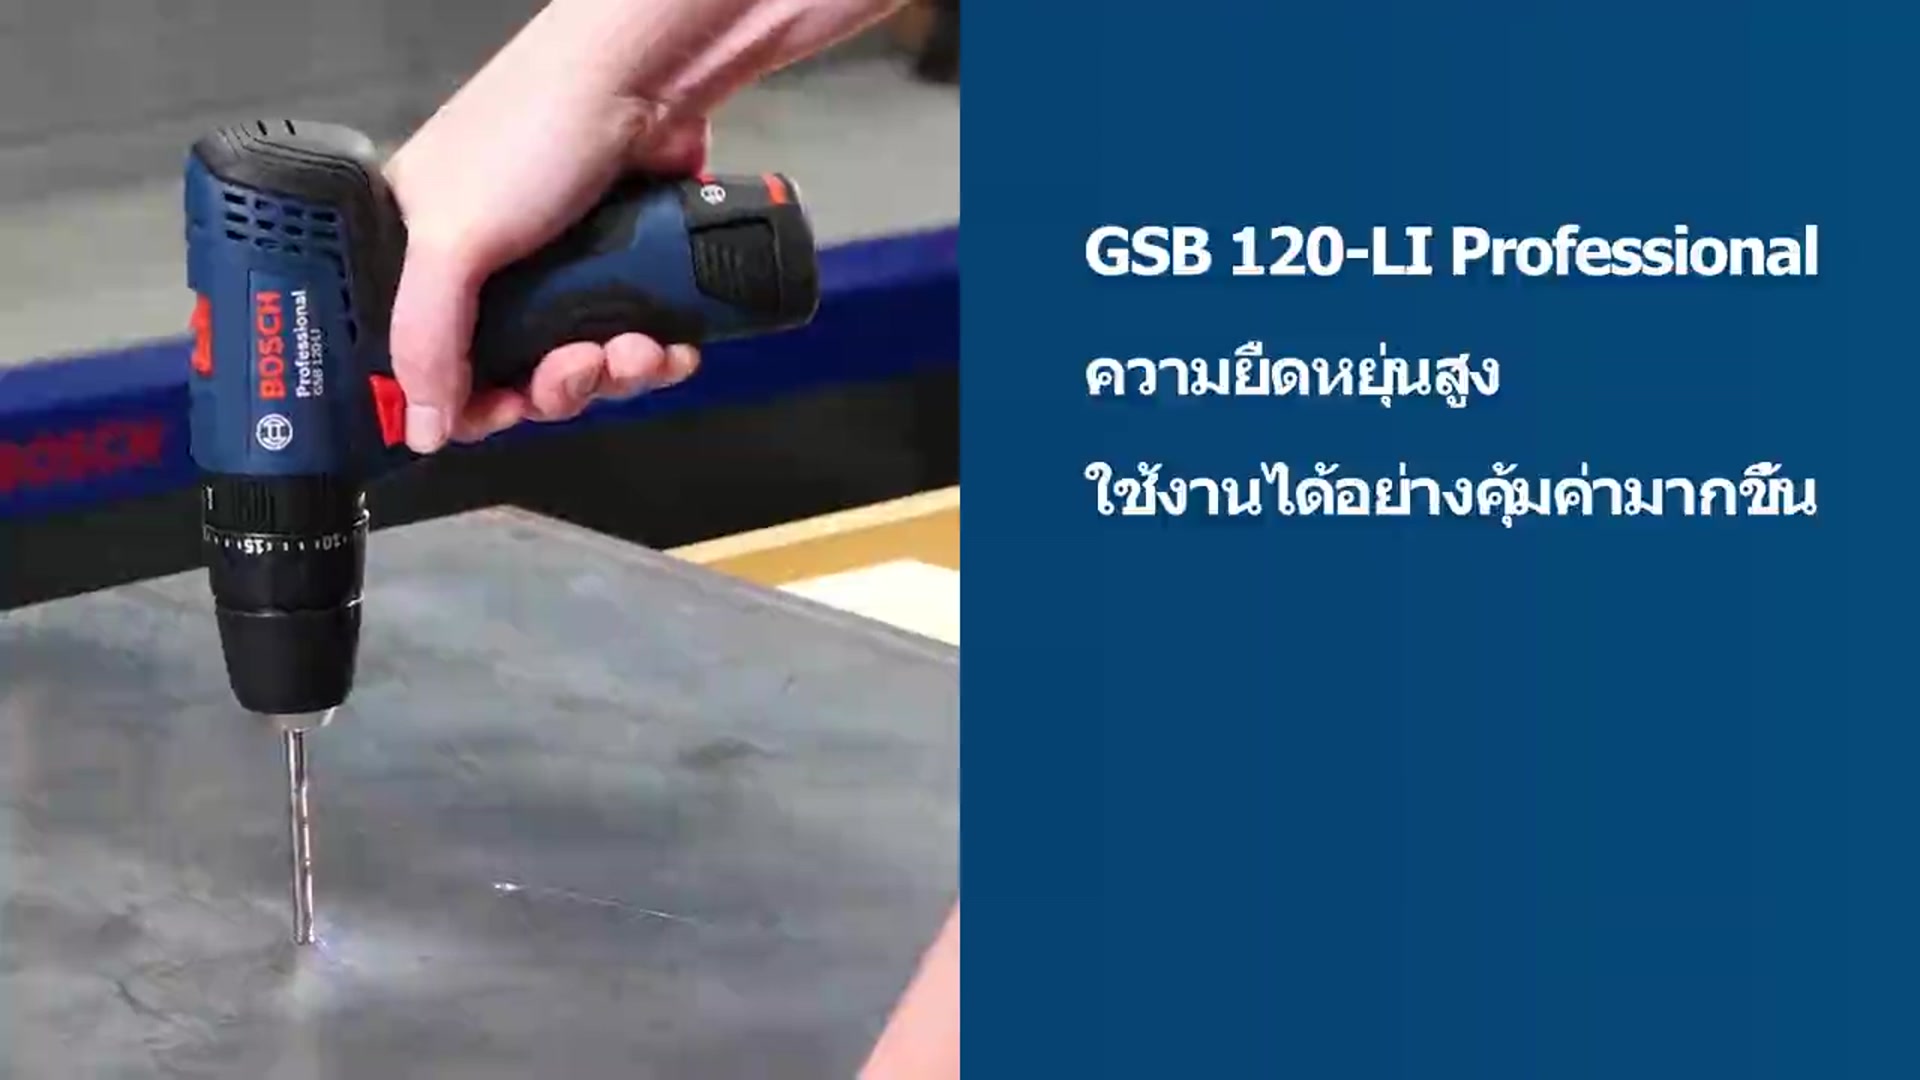 GSB 120-LI